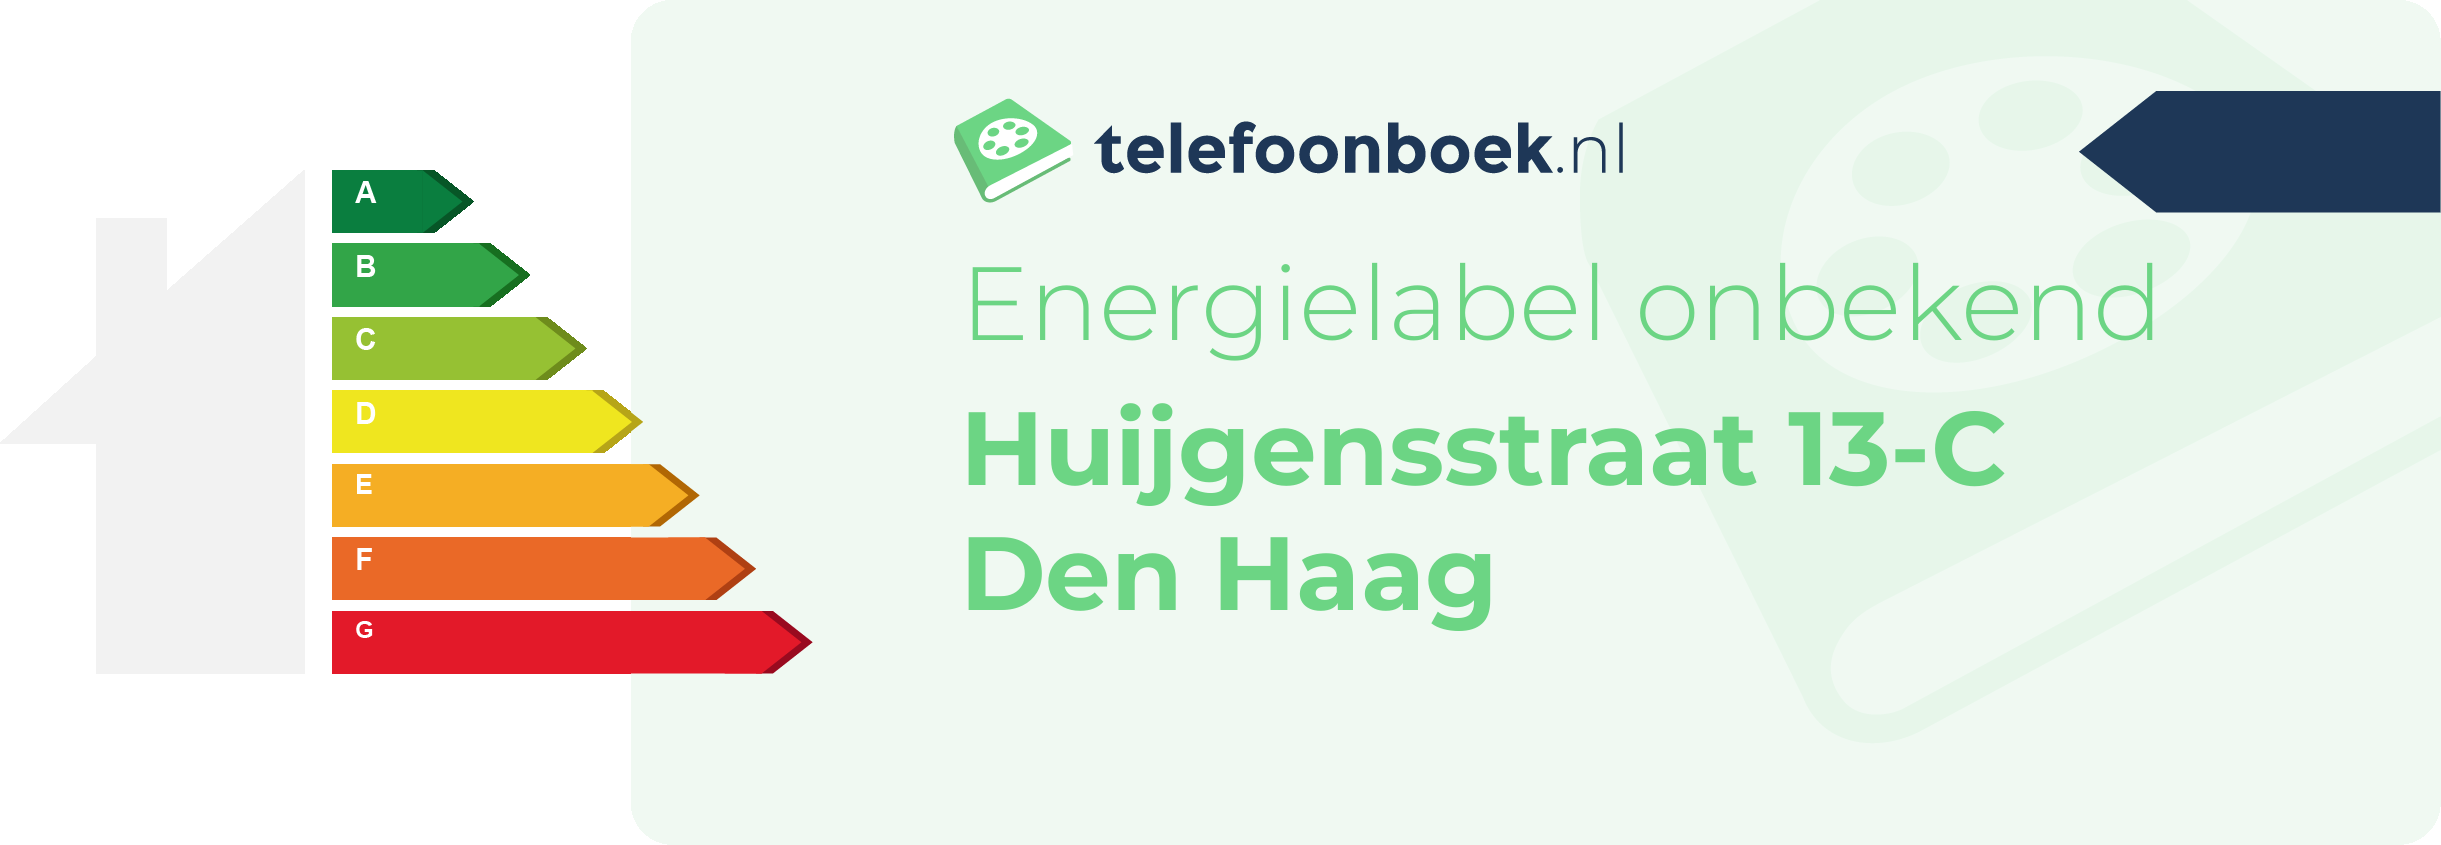 Energielabel Huijgensstraat 13-C Den Haag